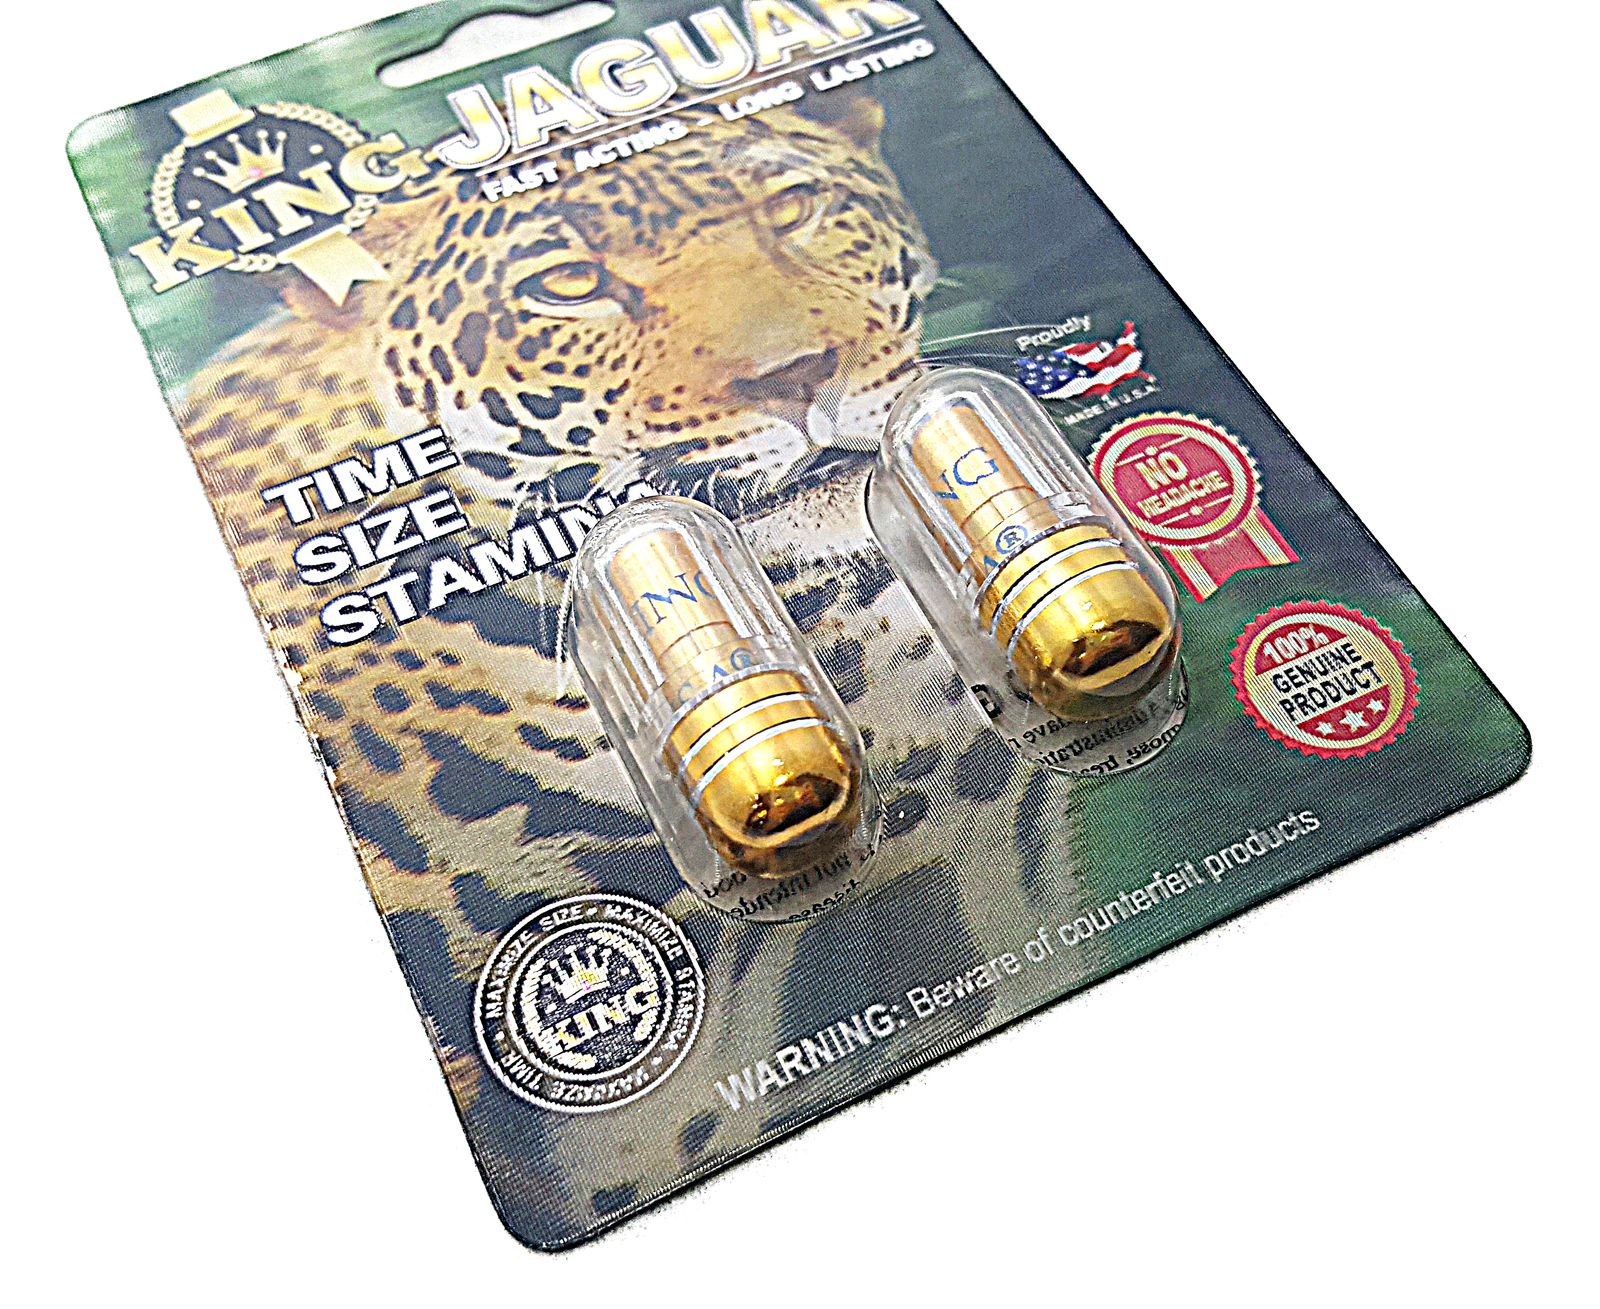 King Jaguar Titanium 12000 - Male Enhancement Pill - 2 ...